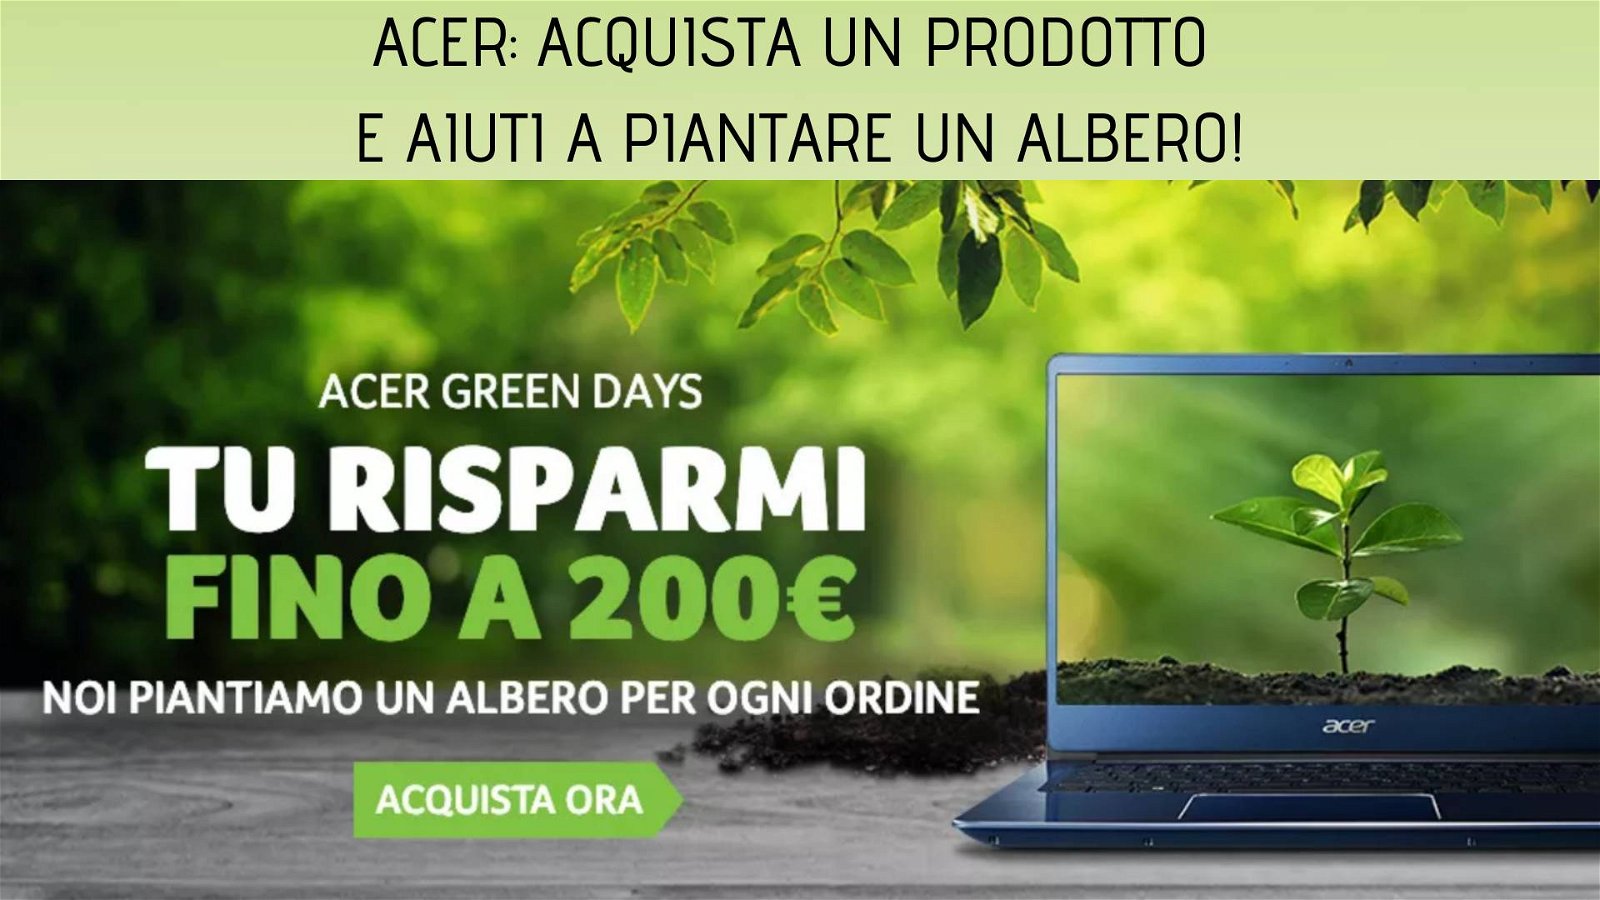 Immagine di Acer Green Days: 200€ di sconto e un albero piantato per ogni ordine